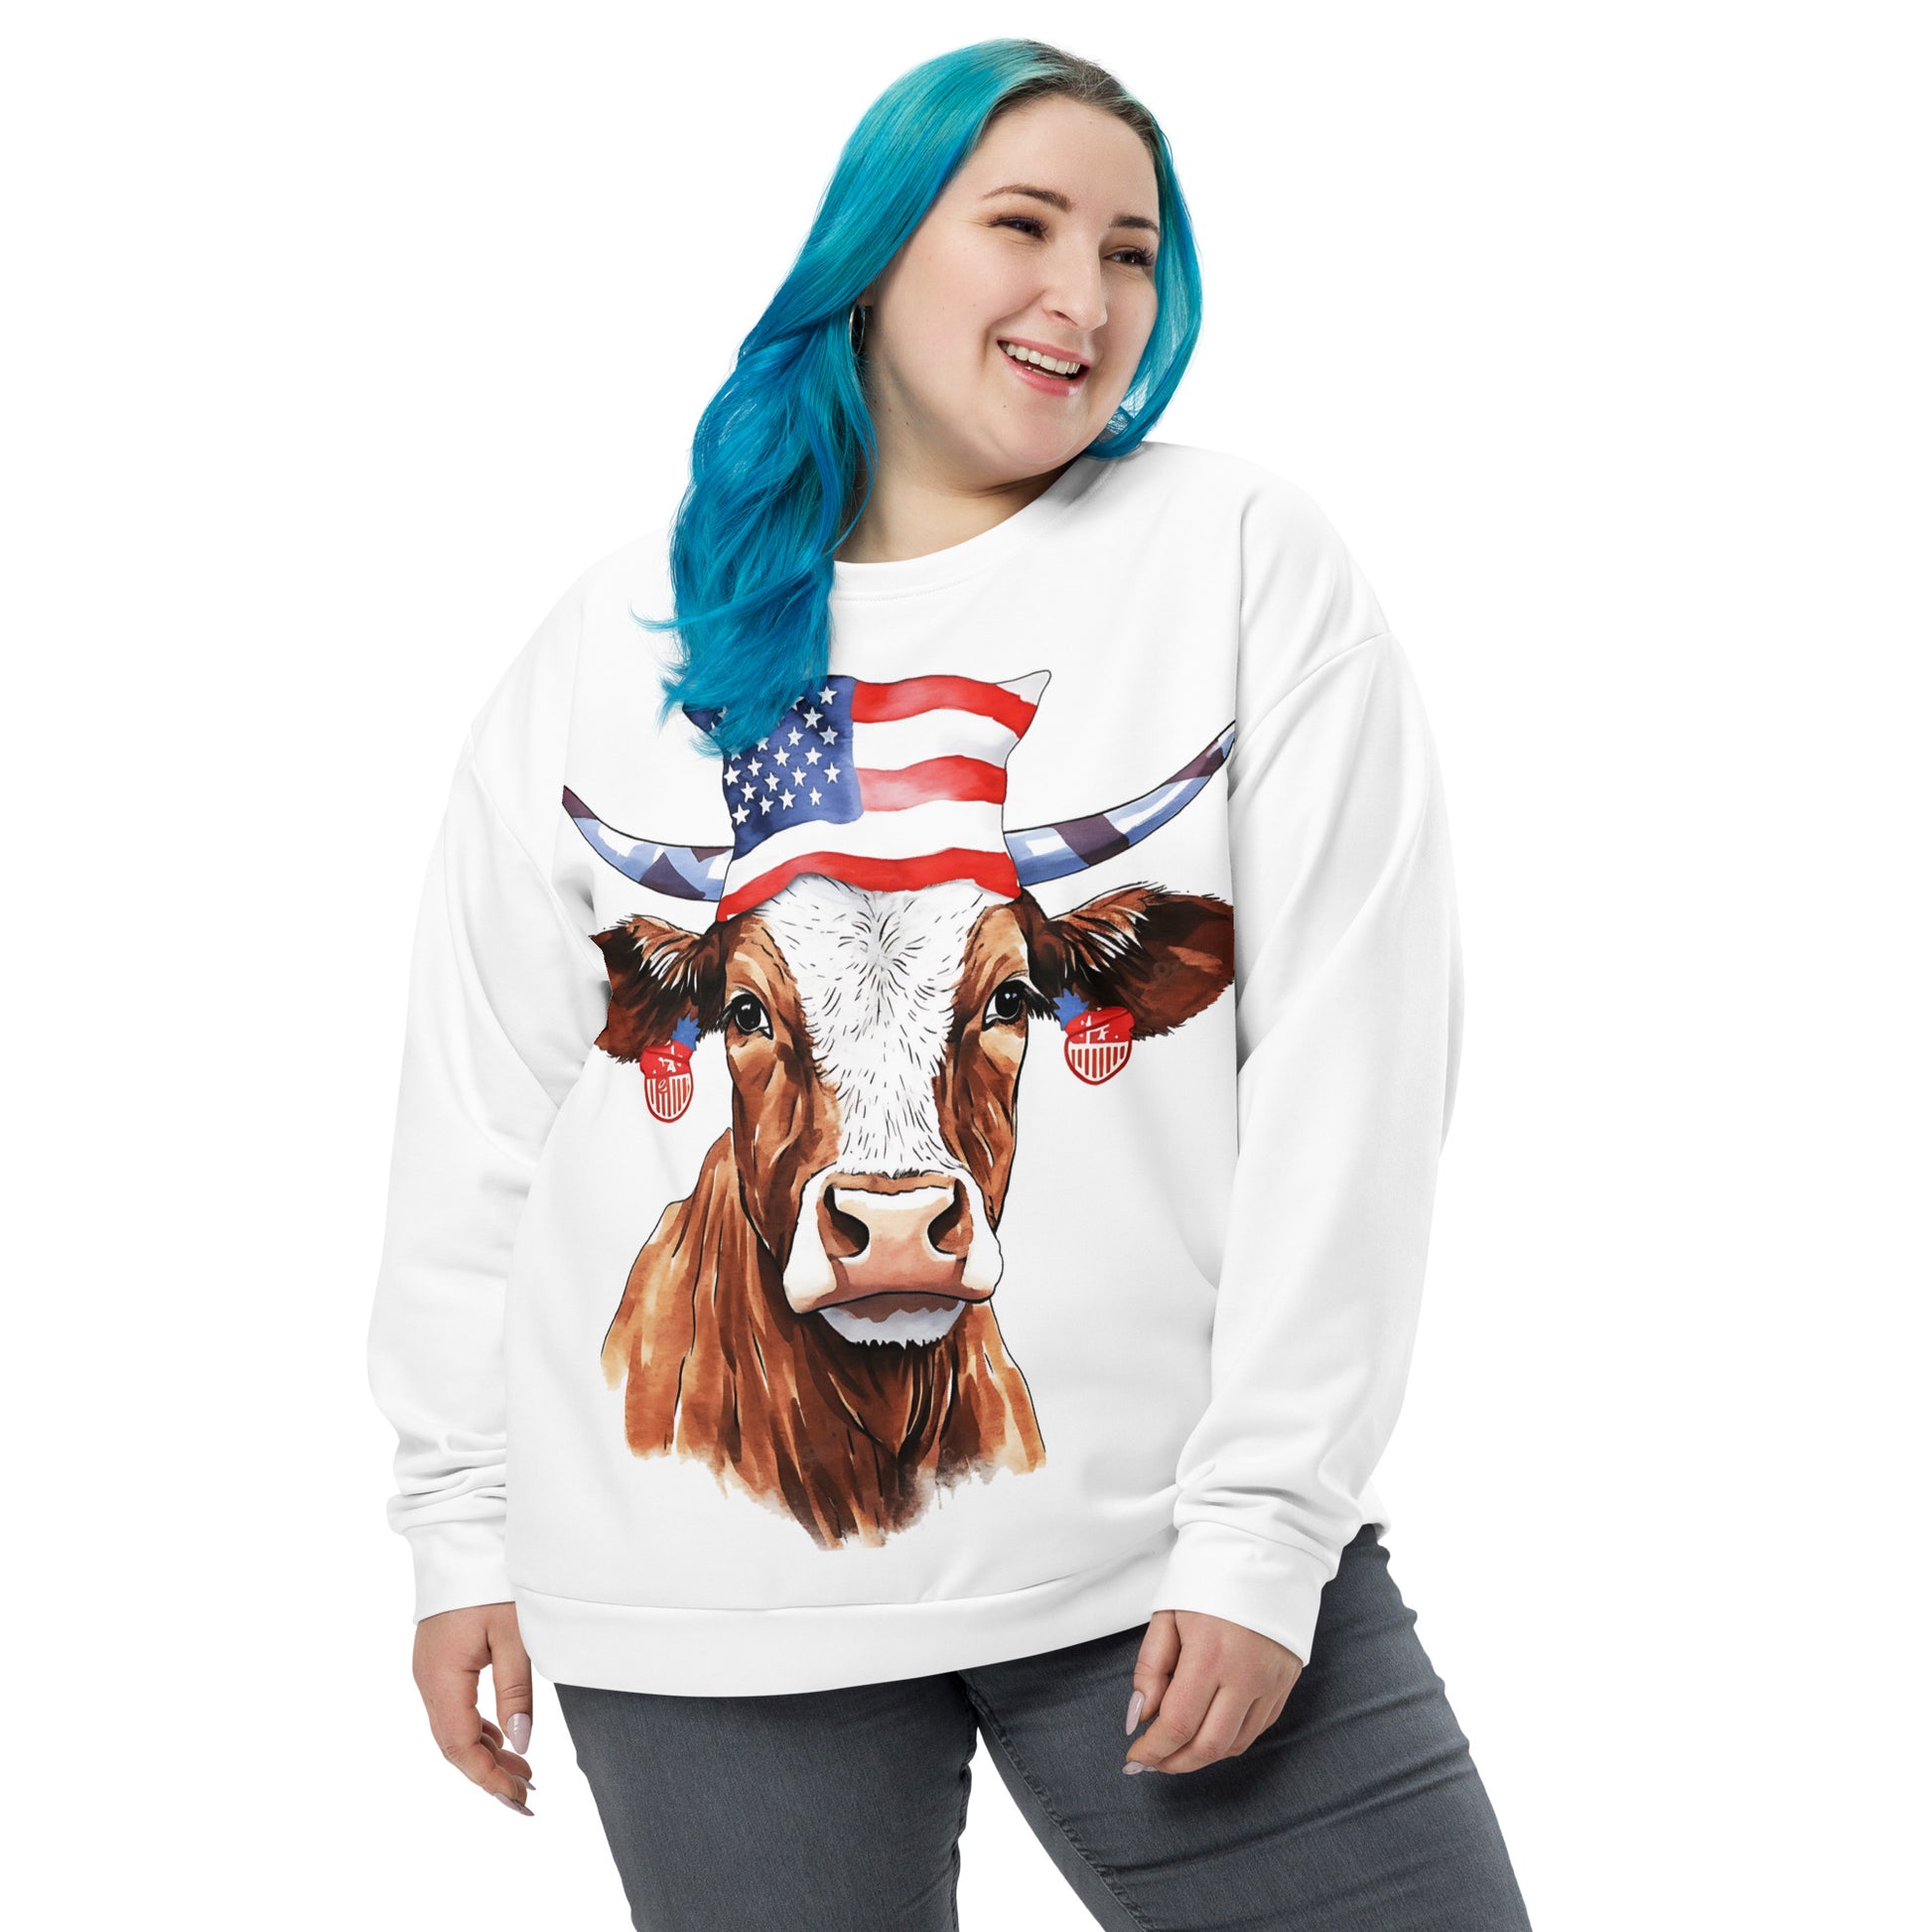 Patriotic Cow Sweatshirt For Cow Lover